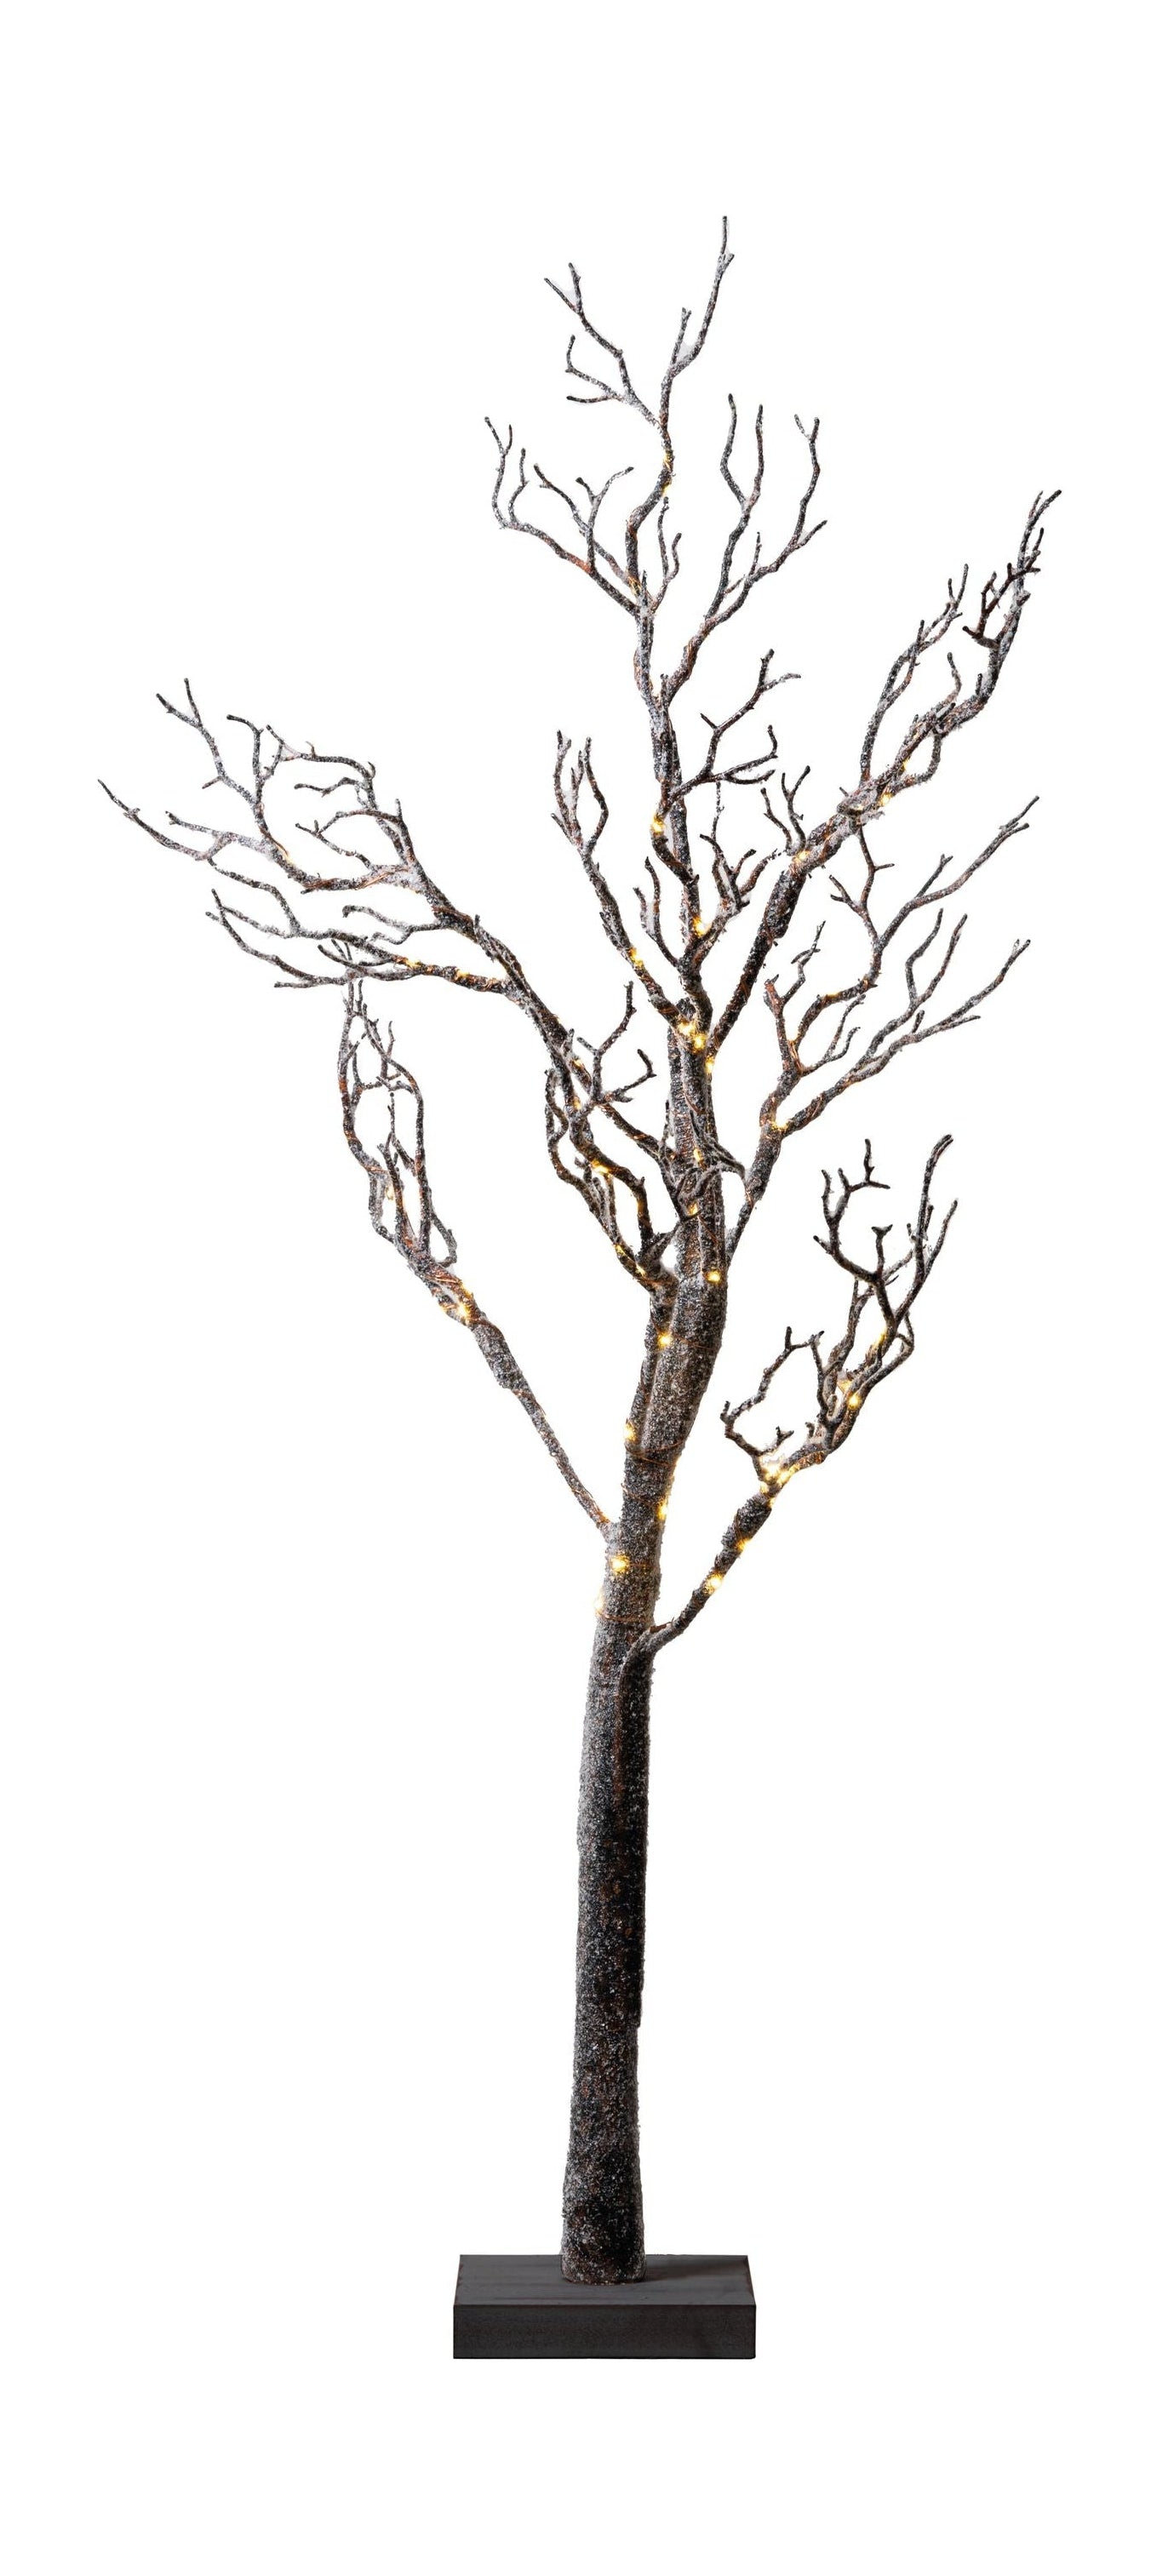 Sirius Tora Tree 1,2m, brun / neige